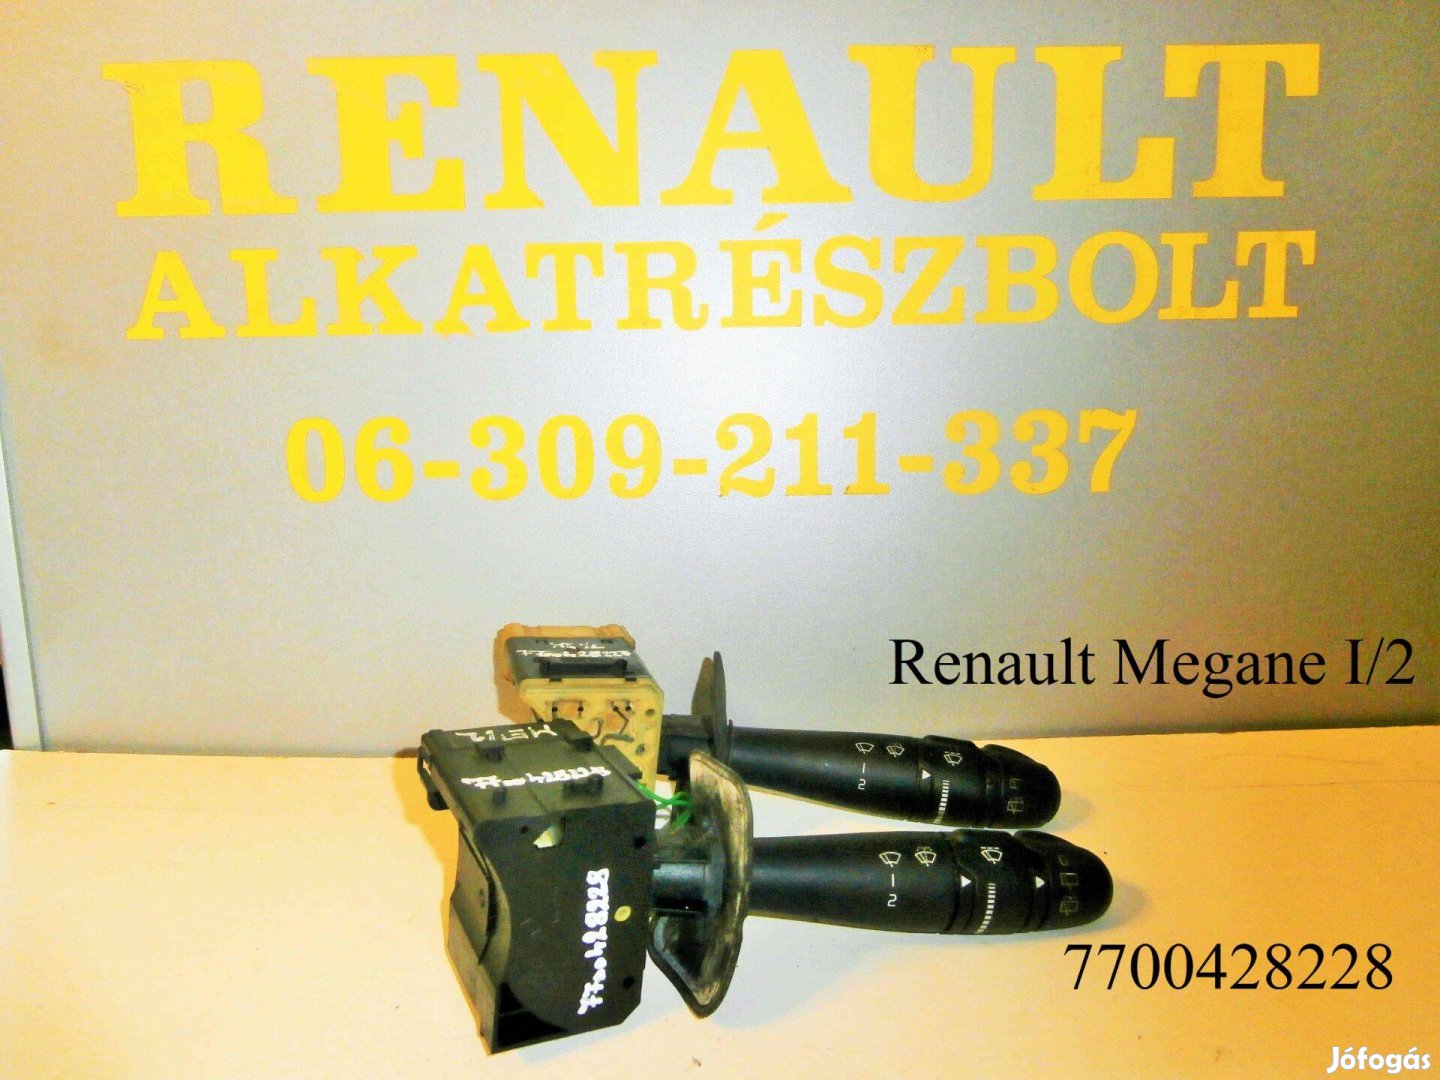 Renault Megane I/2 ablaktörlő kapcsoló 7700428228